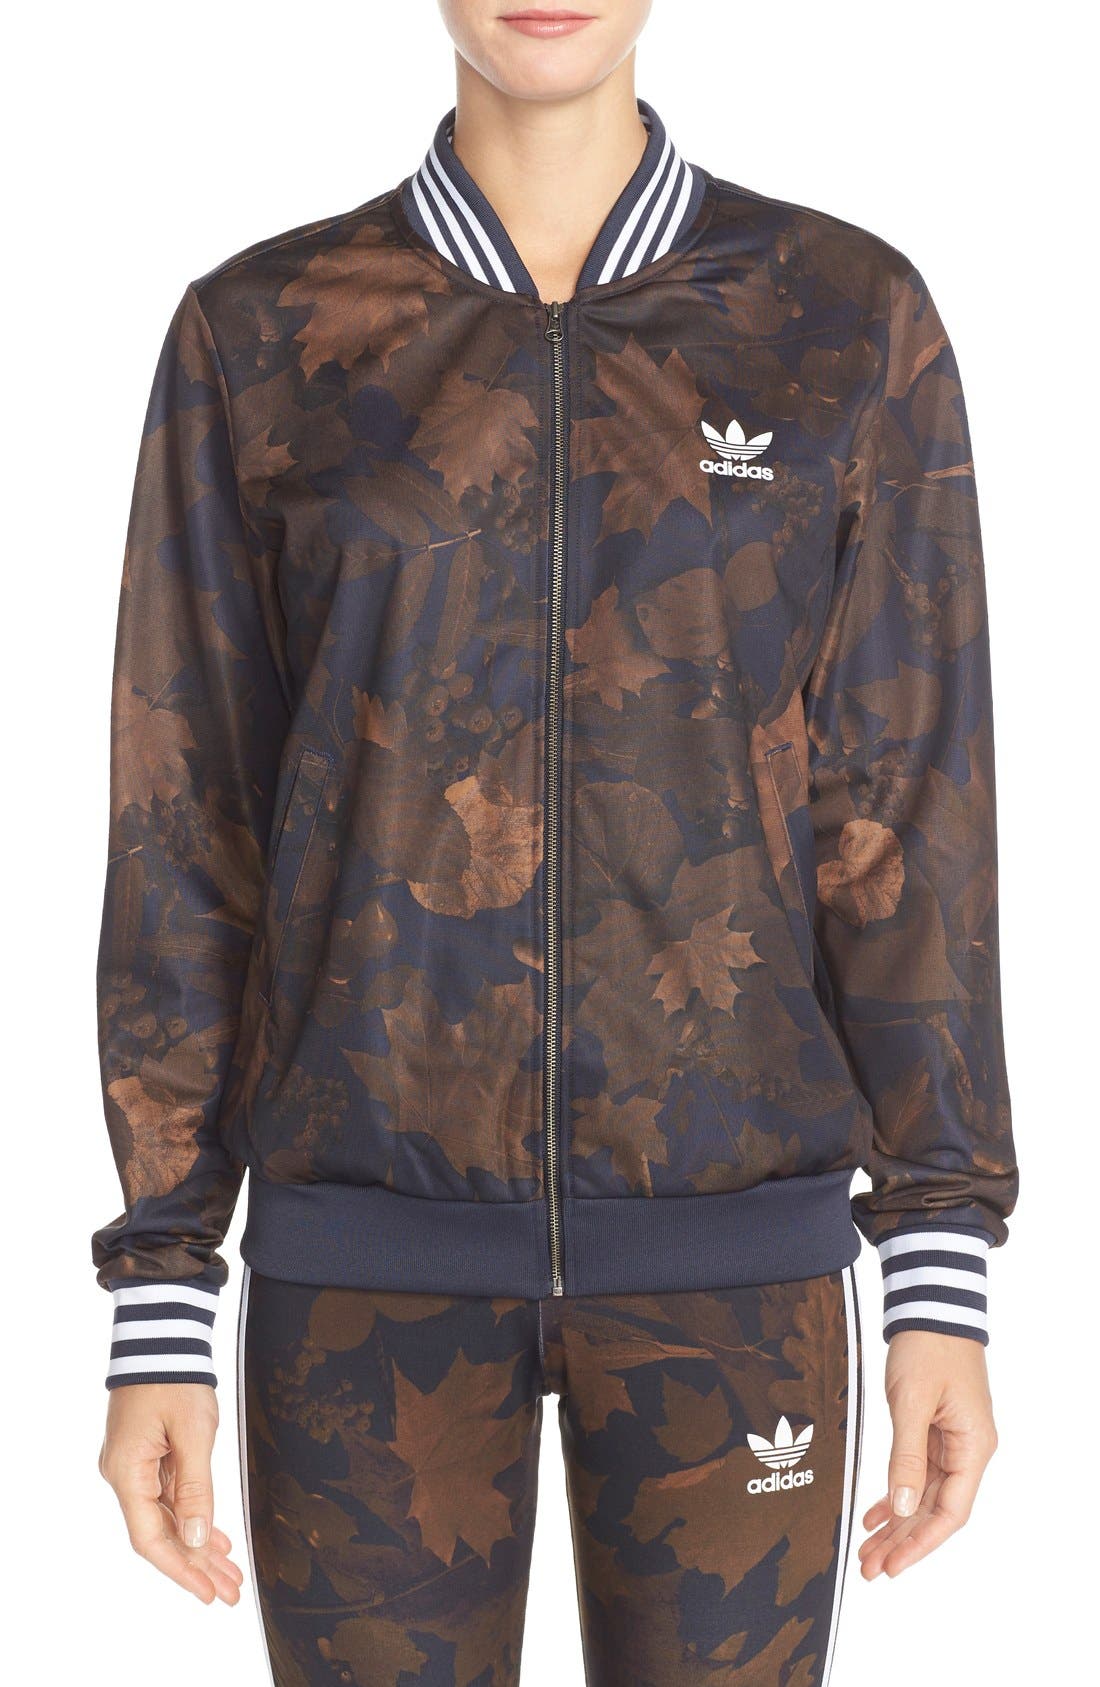 adidas leaf jacket